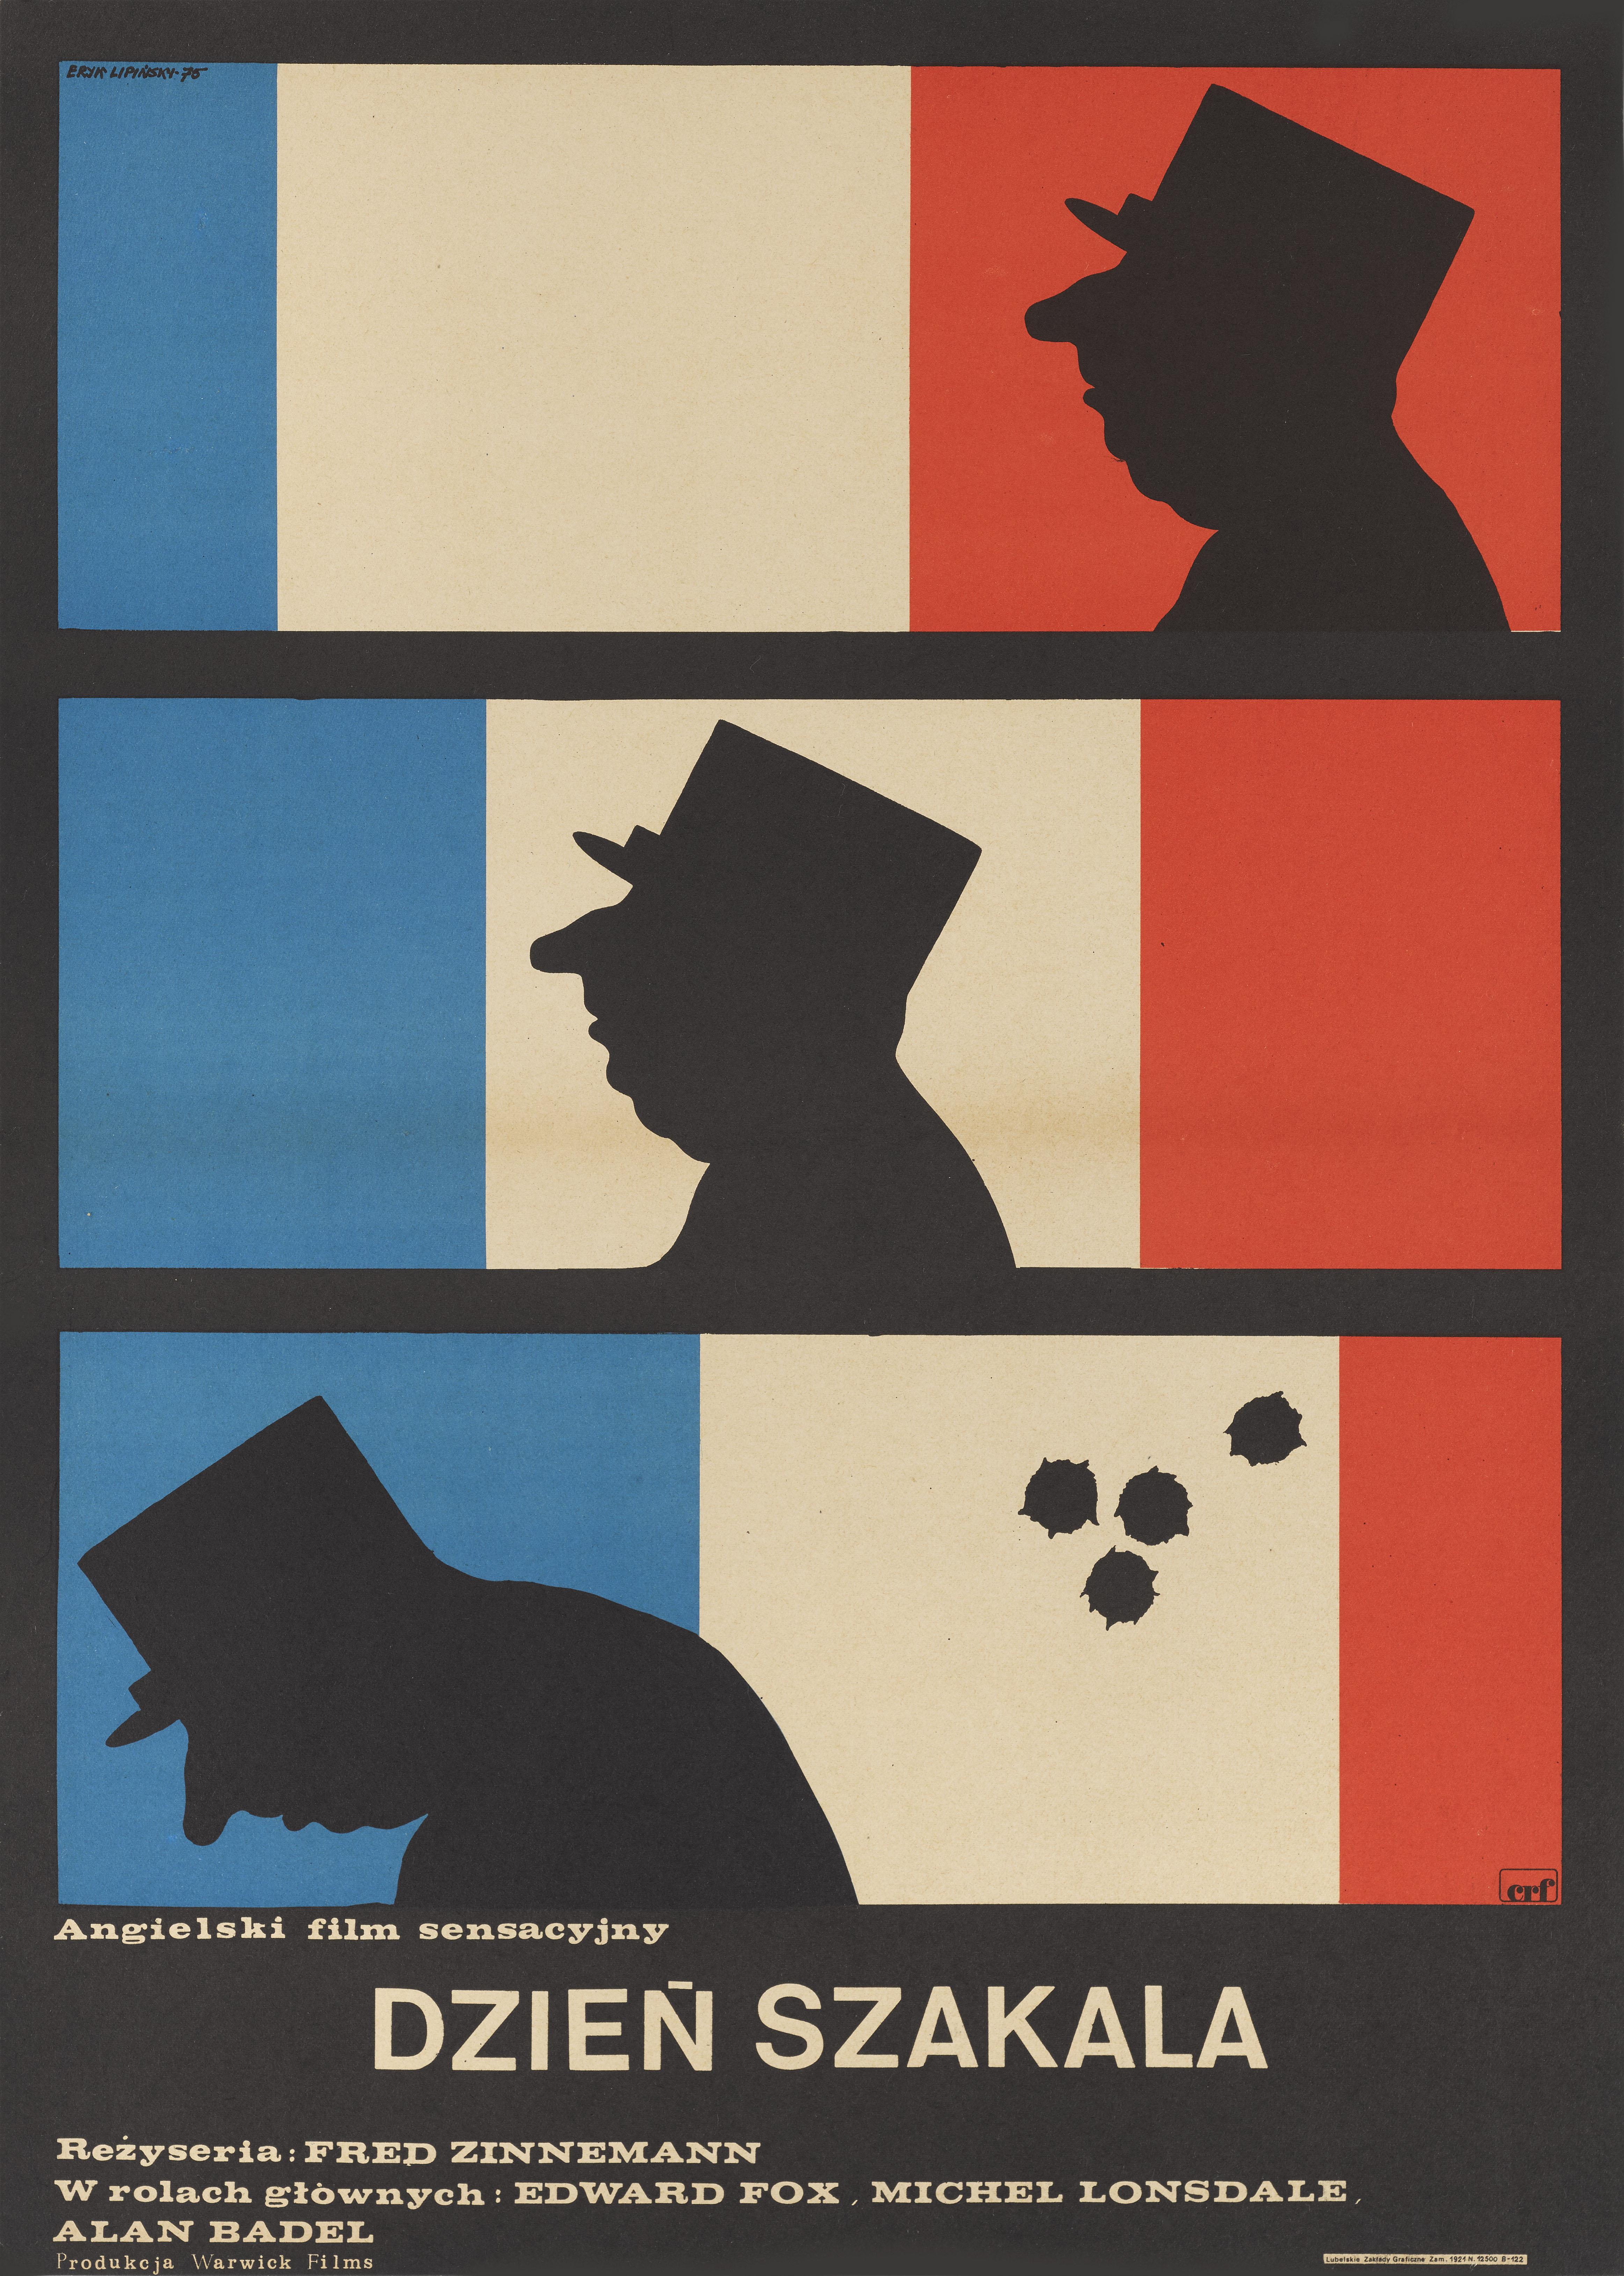 Affiche originale du film Le jour du chacal (1973).
Cette affiche conçue par Eryk Lipinksi (1908-1991) a été créée pour la première sortie polonaise du film en 1975.
Le dessin de cette affiche est de Lucjan Jagodzinski (1897-1971).
Cette affiche